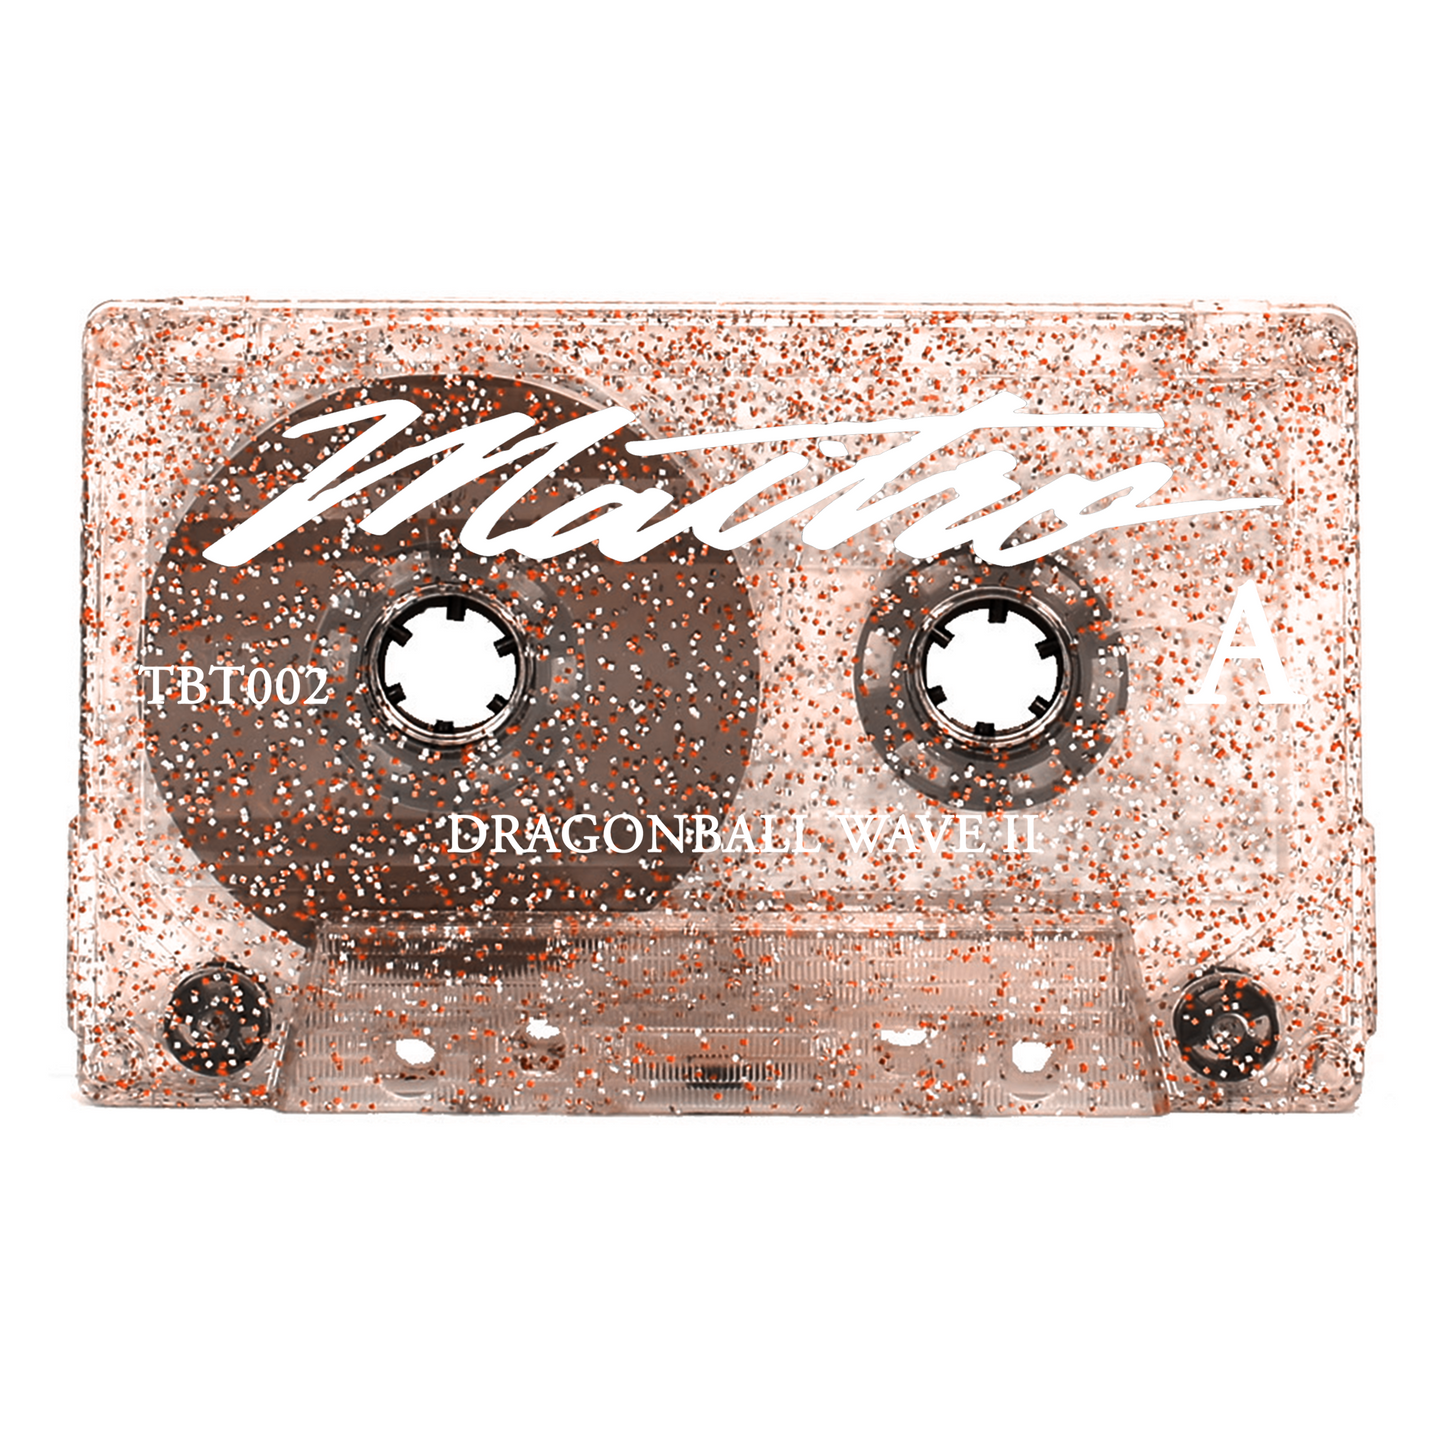 Maitro - "Dragonball Wave II" Cassette Tape